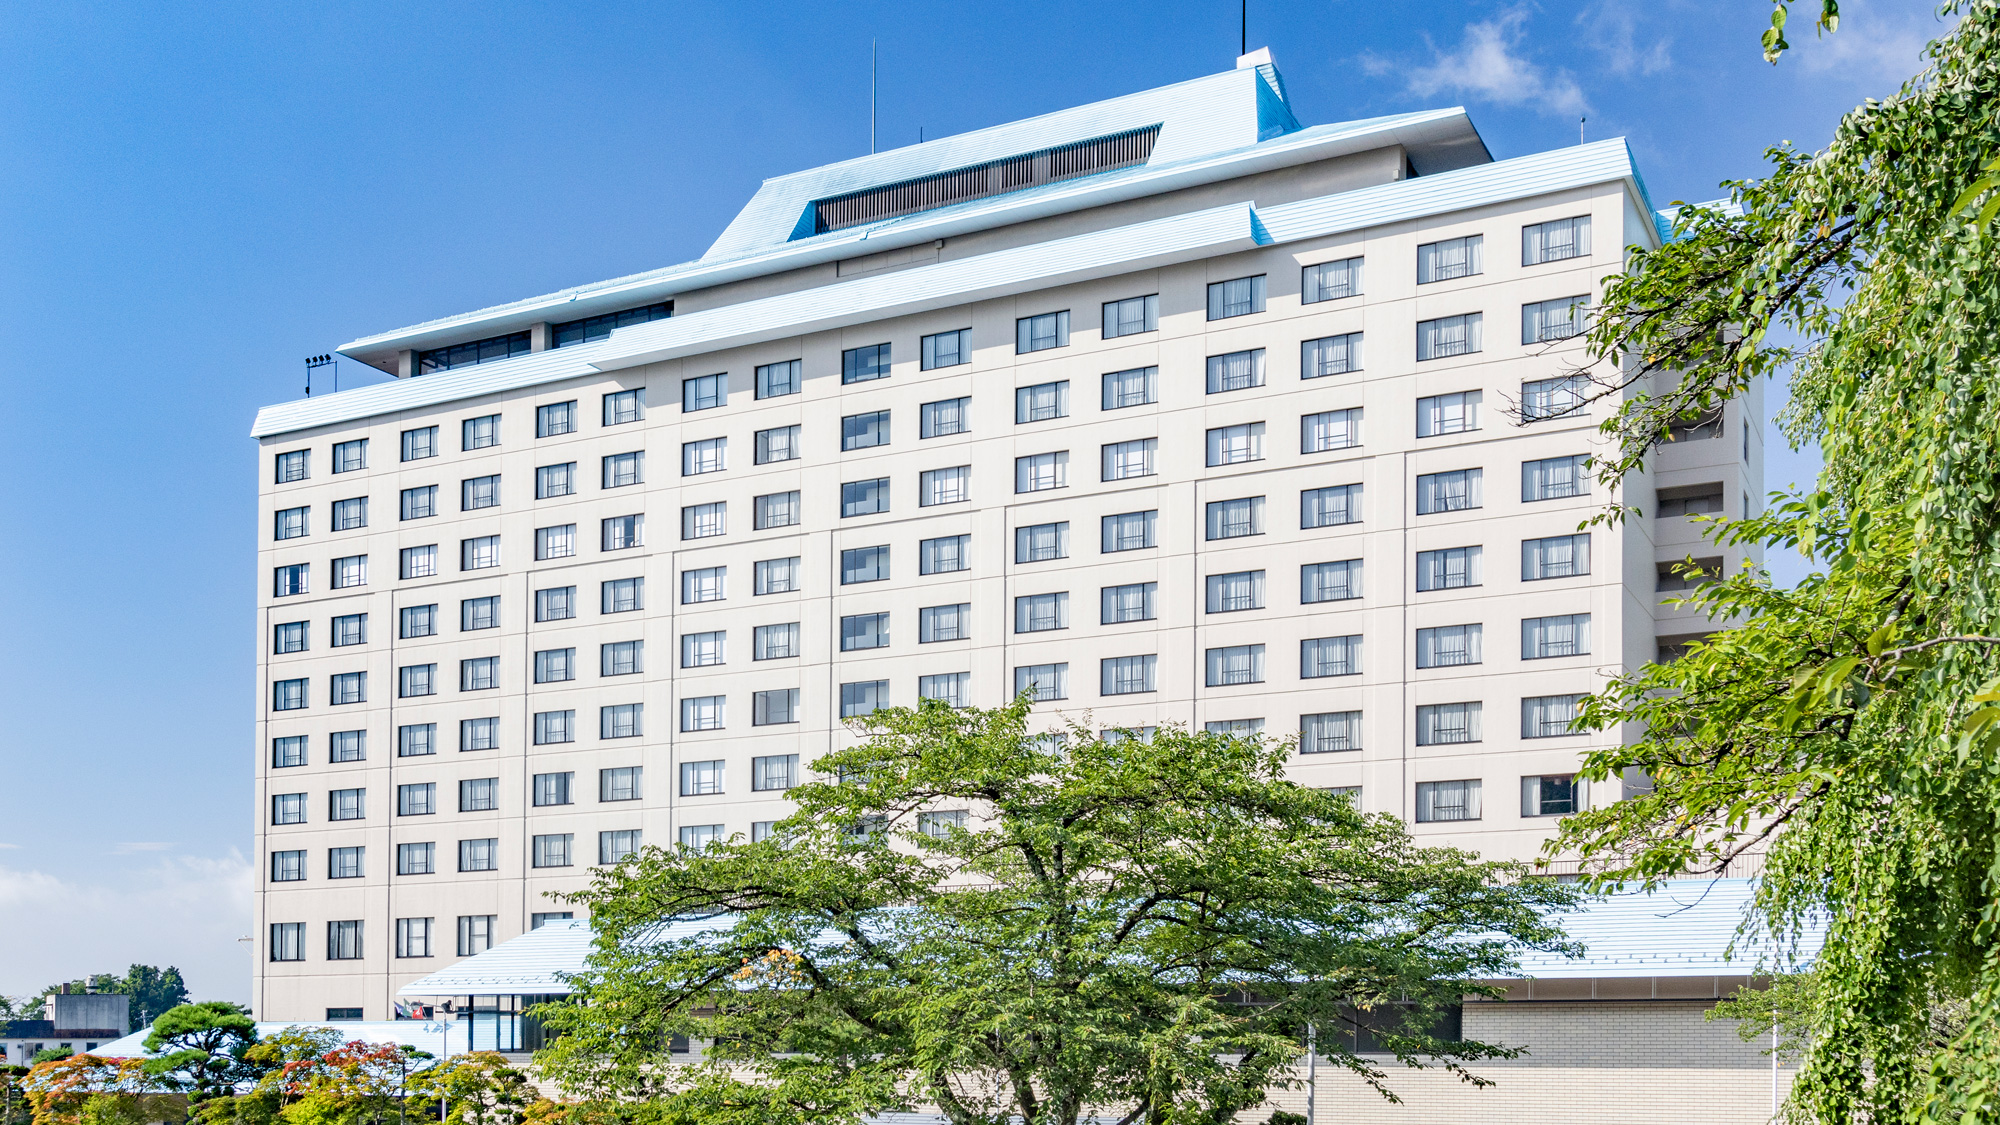 Hanamaki Onsen Hotel Senshukaku